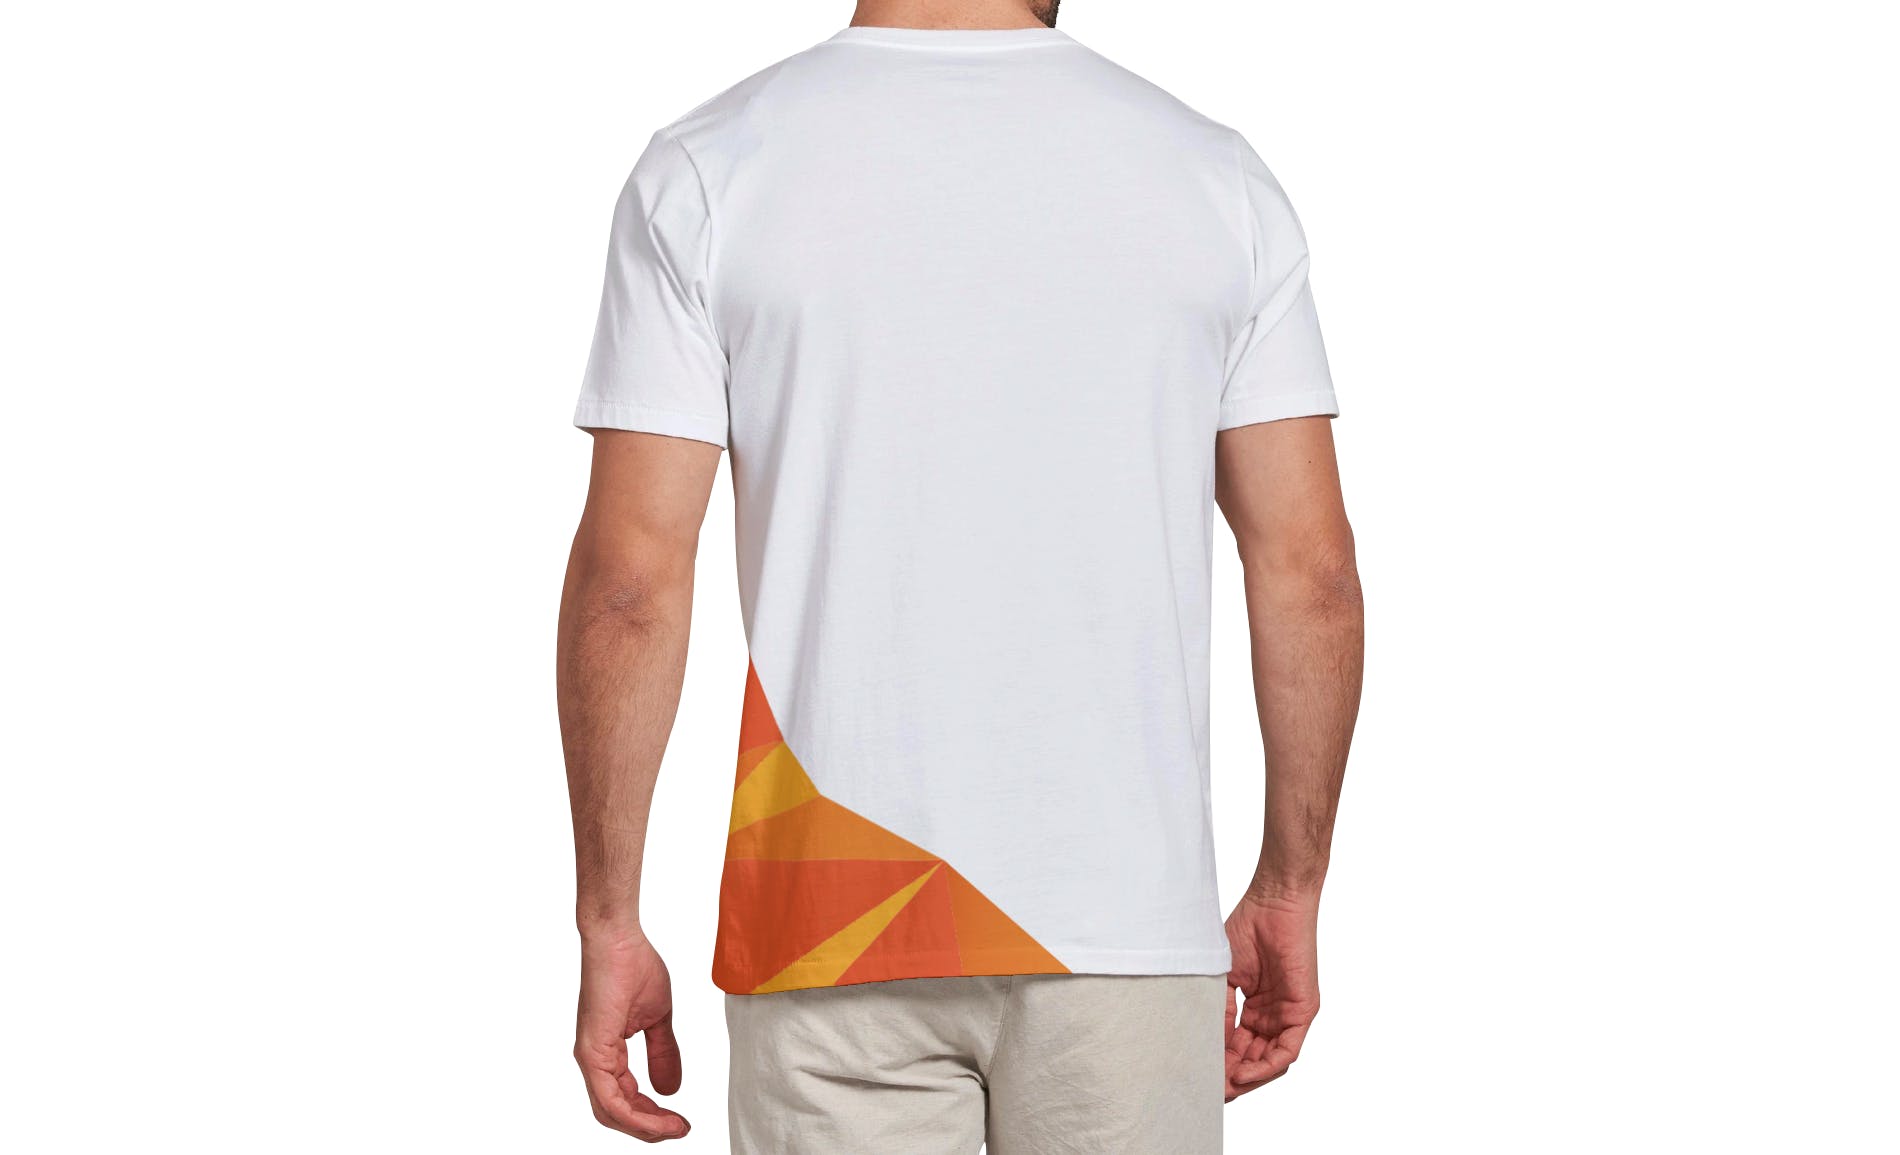 男士T恤印花设计效果图样机第一素材精选v03 T-shirt Mockup Vol 03插图(3)